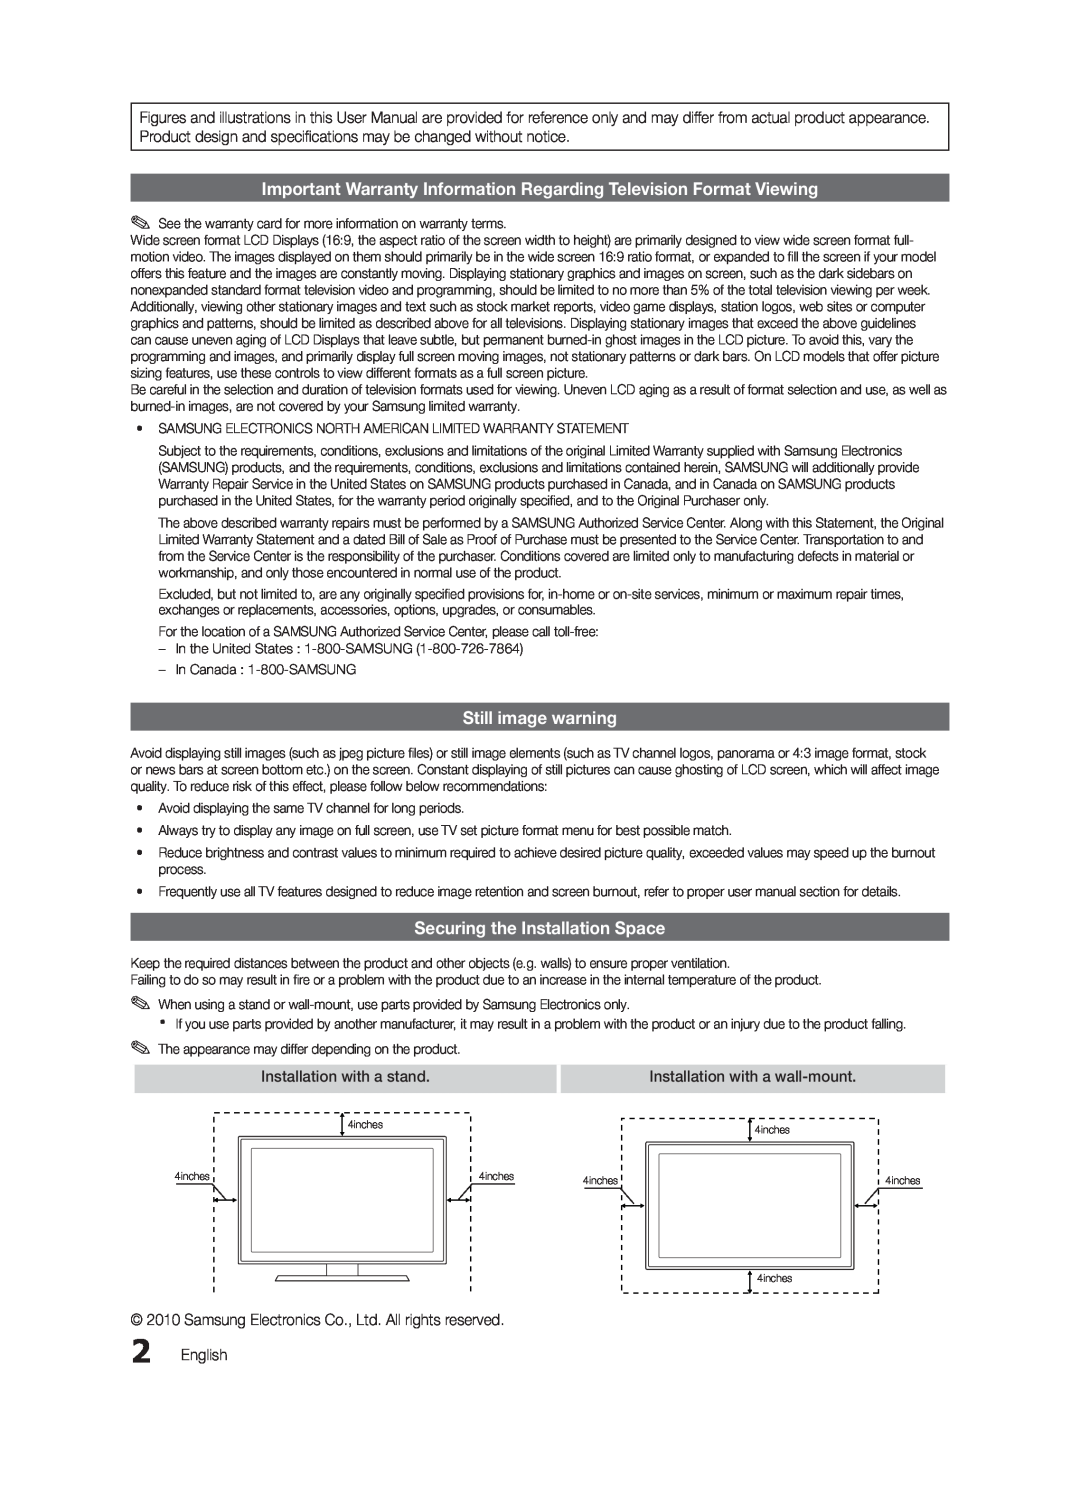 Samsung LN32C550 user manual Important Warranty Information Regarding Television Format Viewing, Still image warning 